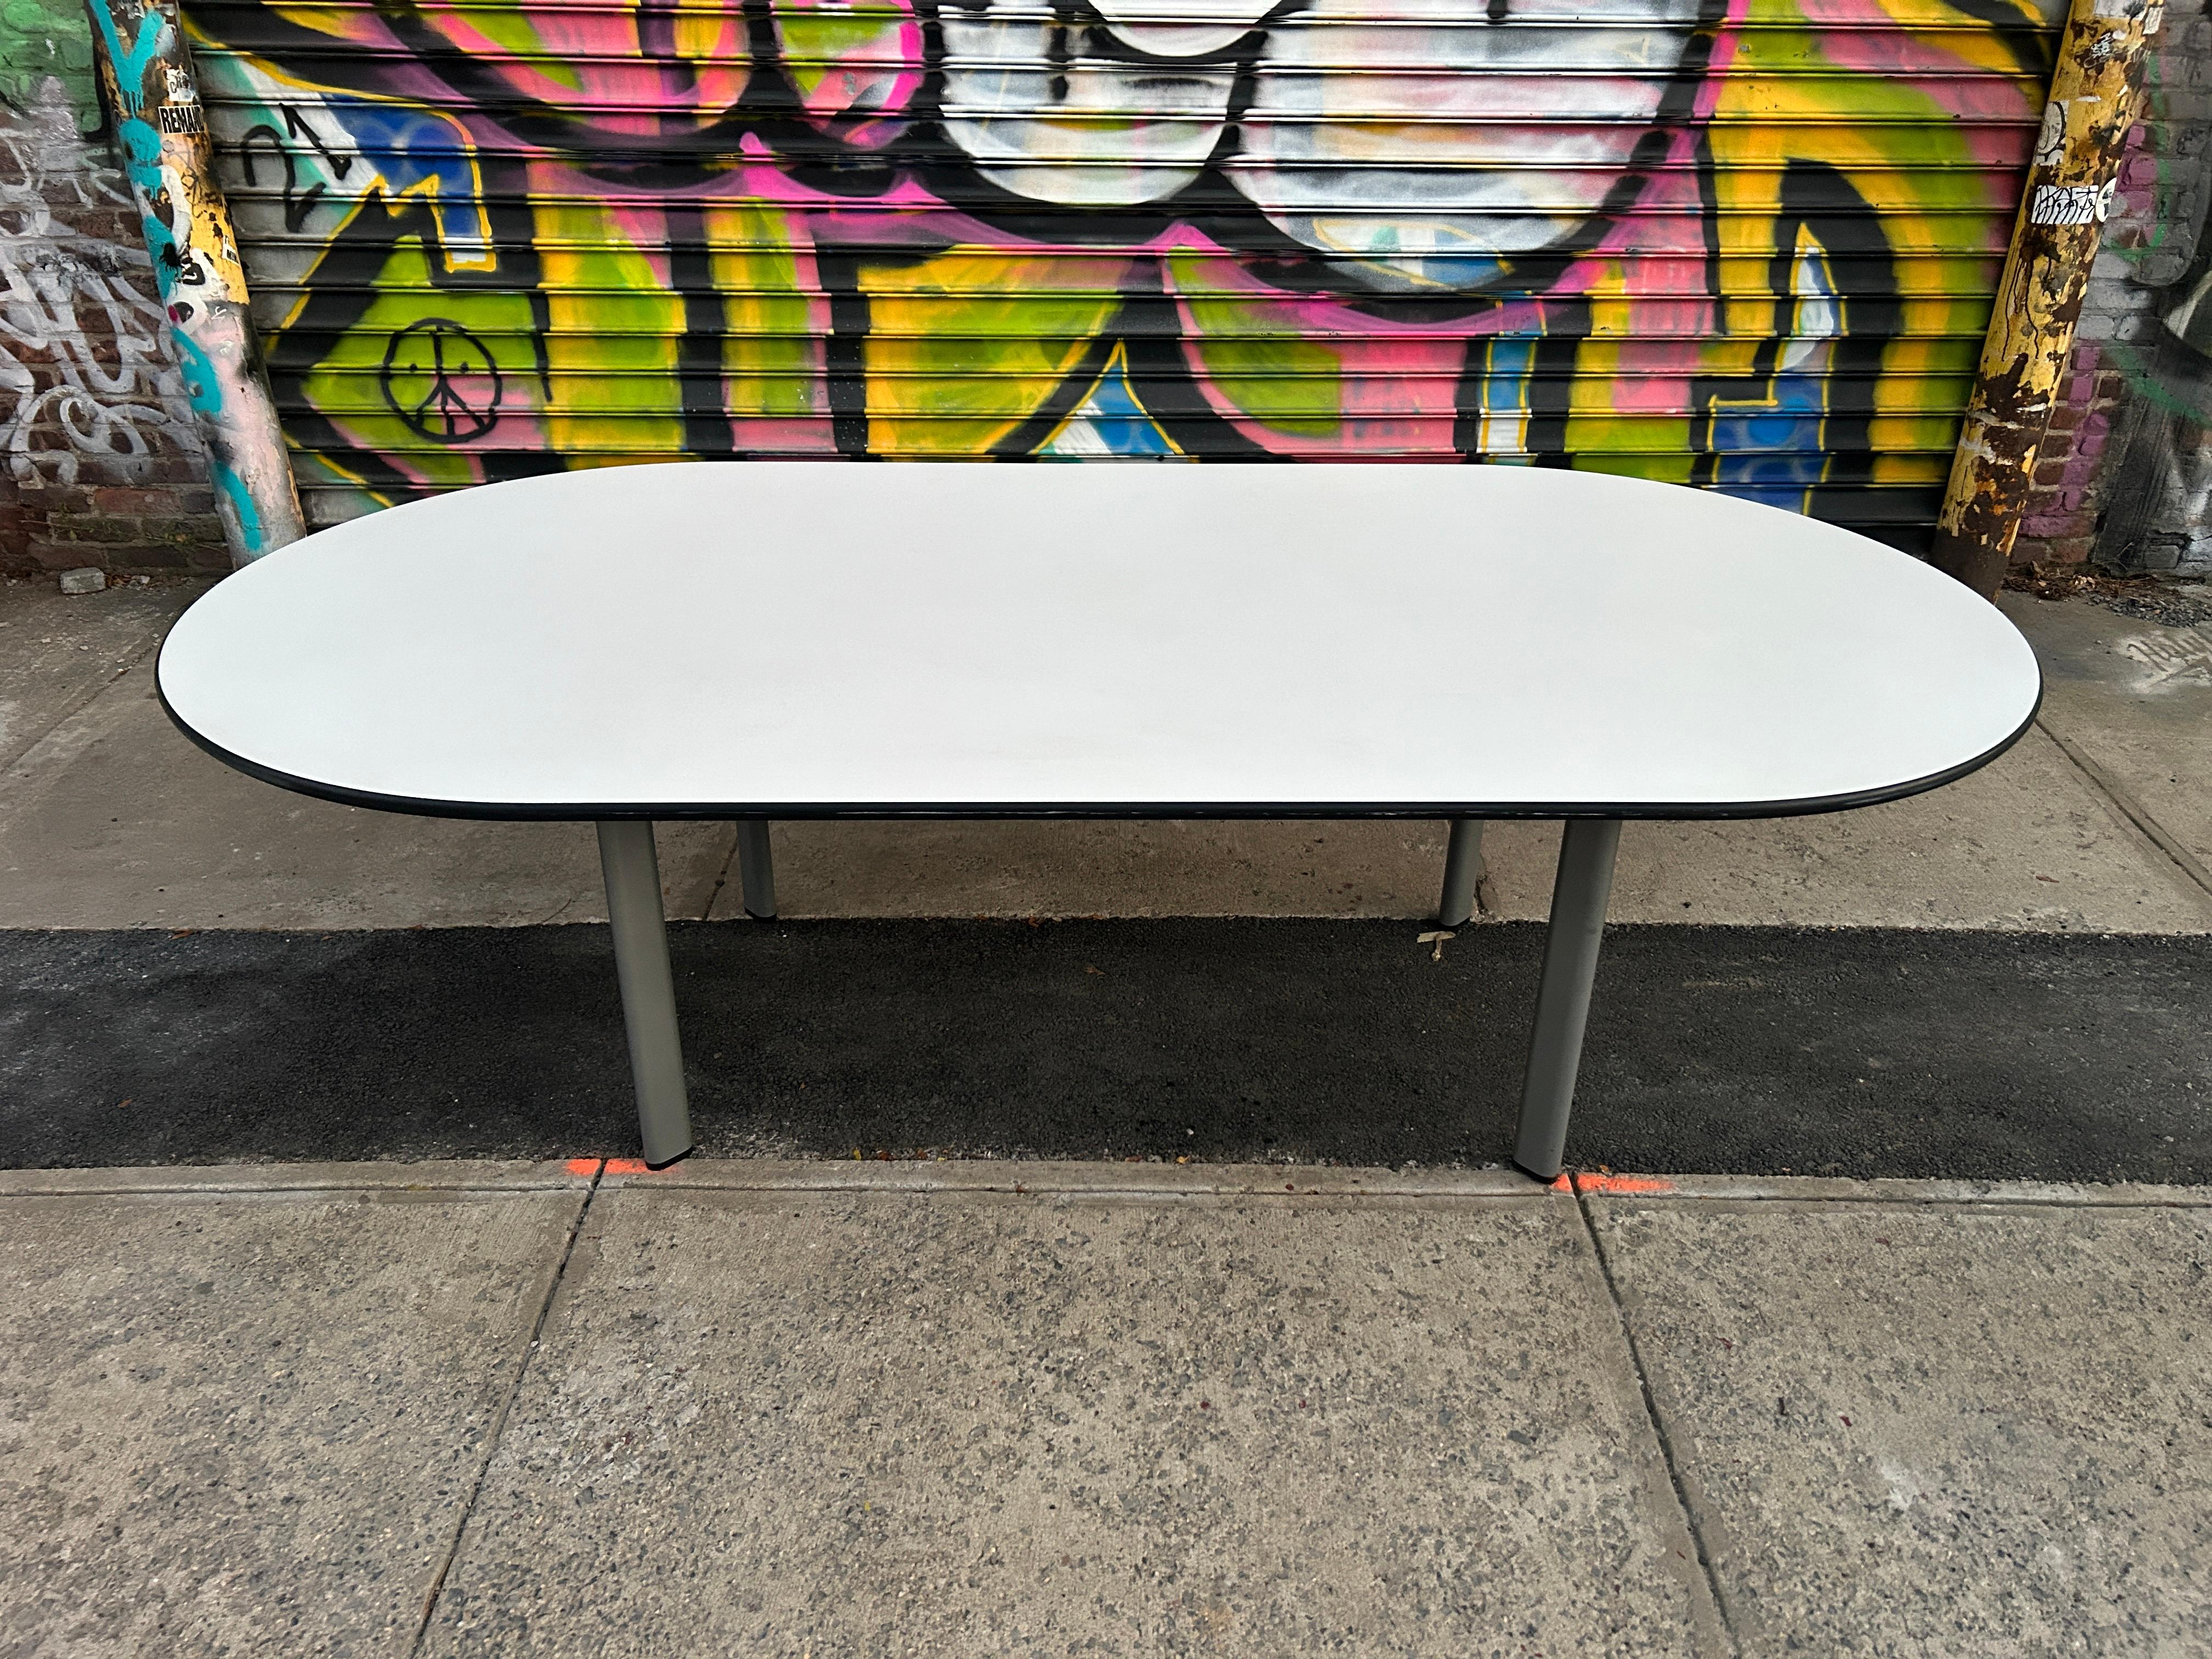 Table de salle à manger post-moderne en stratifié blanc de Whiting par joe d'urso. Table de conférence ou de salle à manger ovale au design simple avec plateau en stratifié blanc et bordures en caoutchouc, reposant sur 4 pieds en tube d'acier ovale